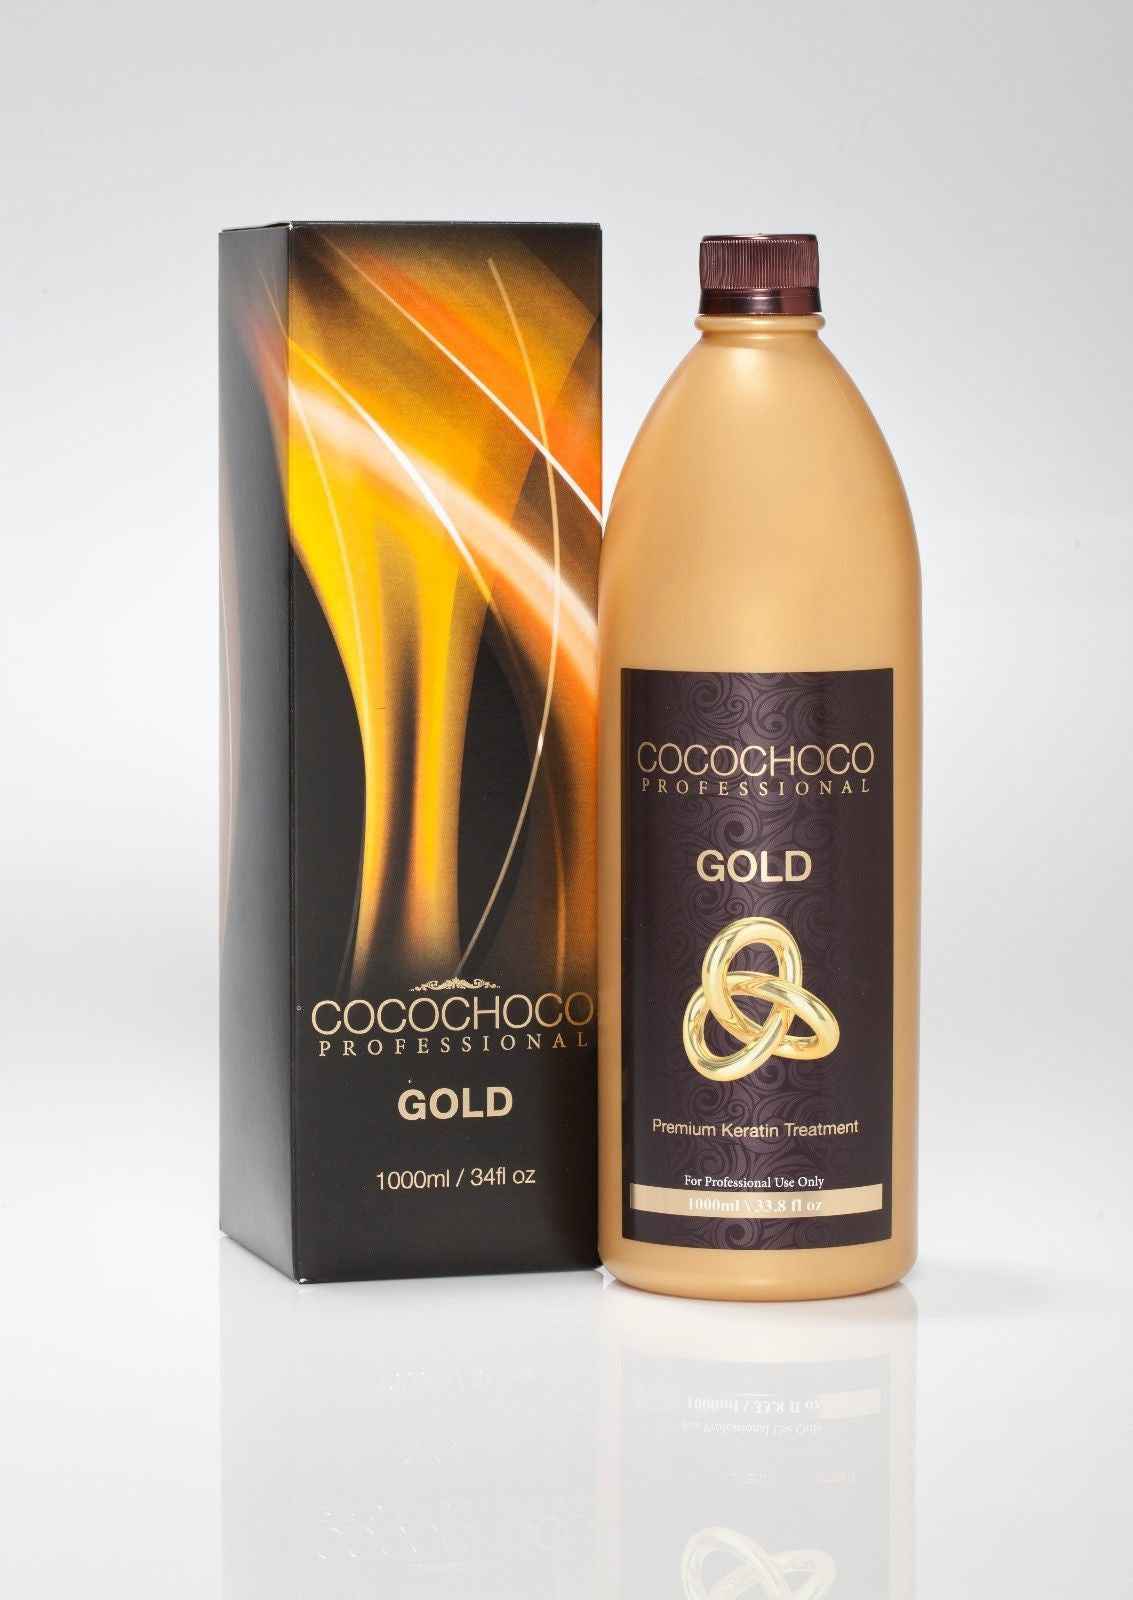 COCOCHOCO PROFESSIONAL GOLD 1000ml